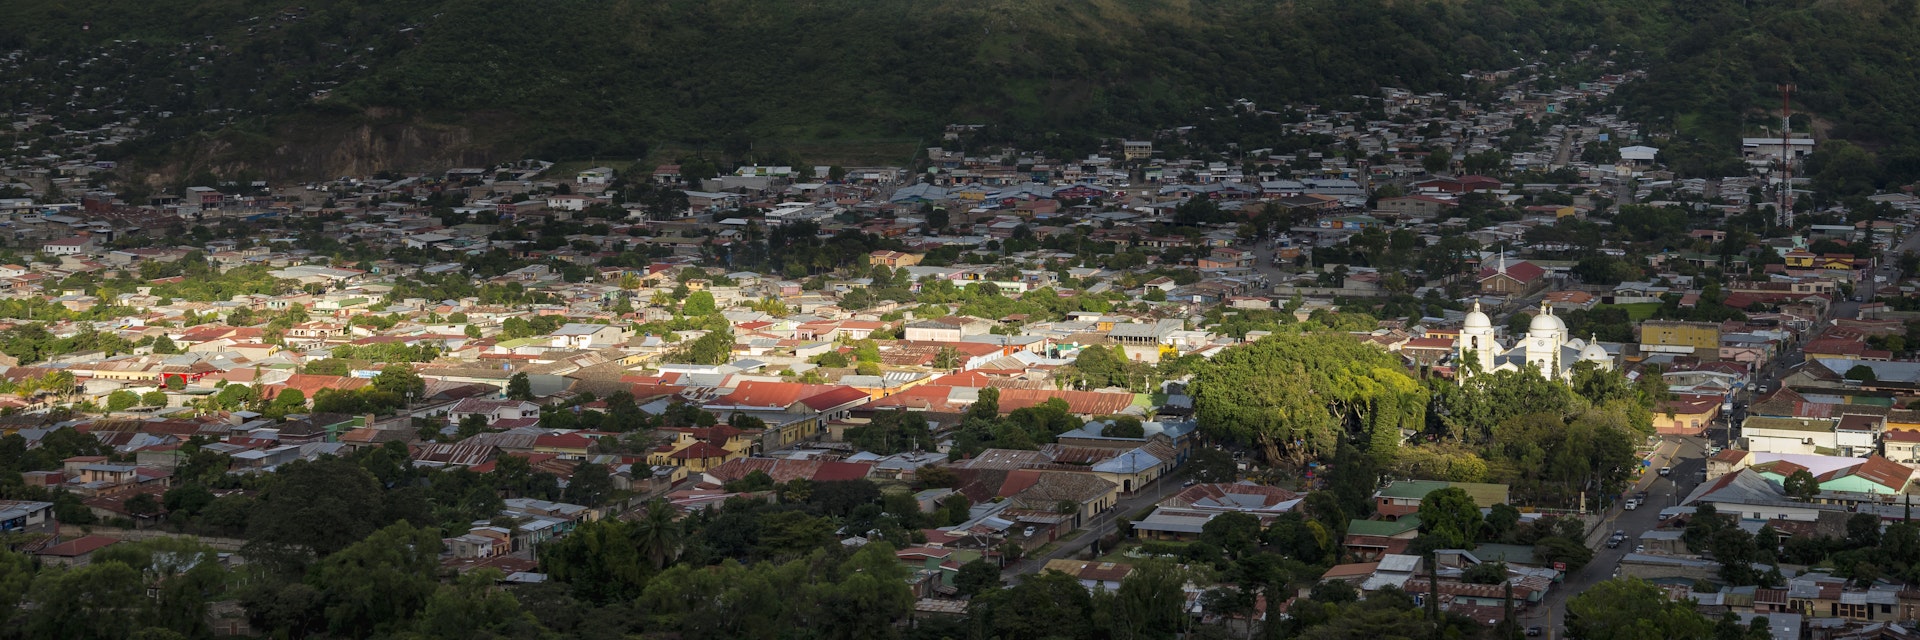 View from Cerro La Cruz, Jinotega, Nicaragua